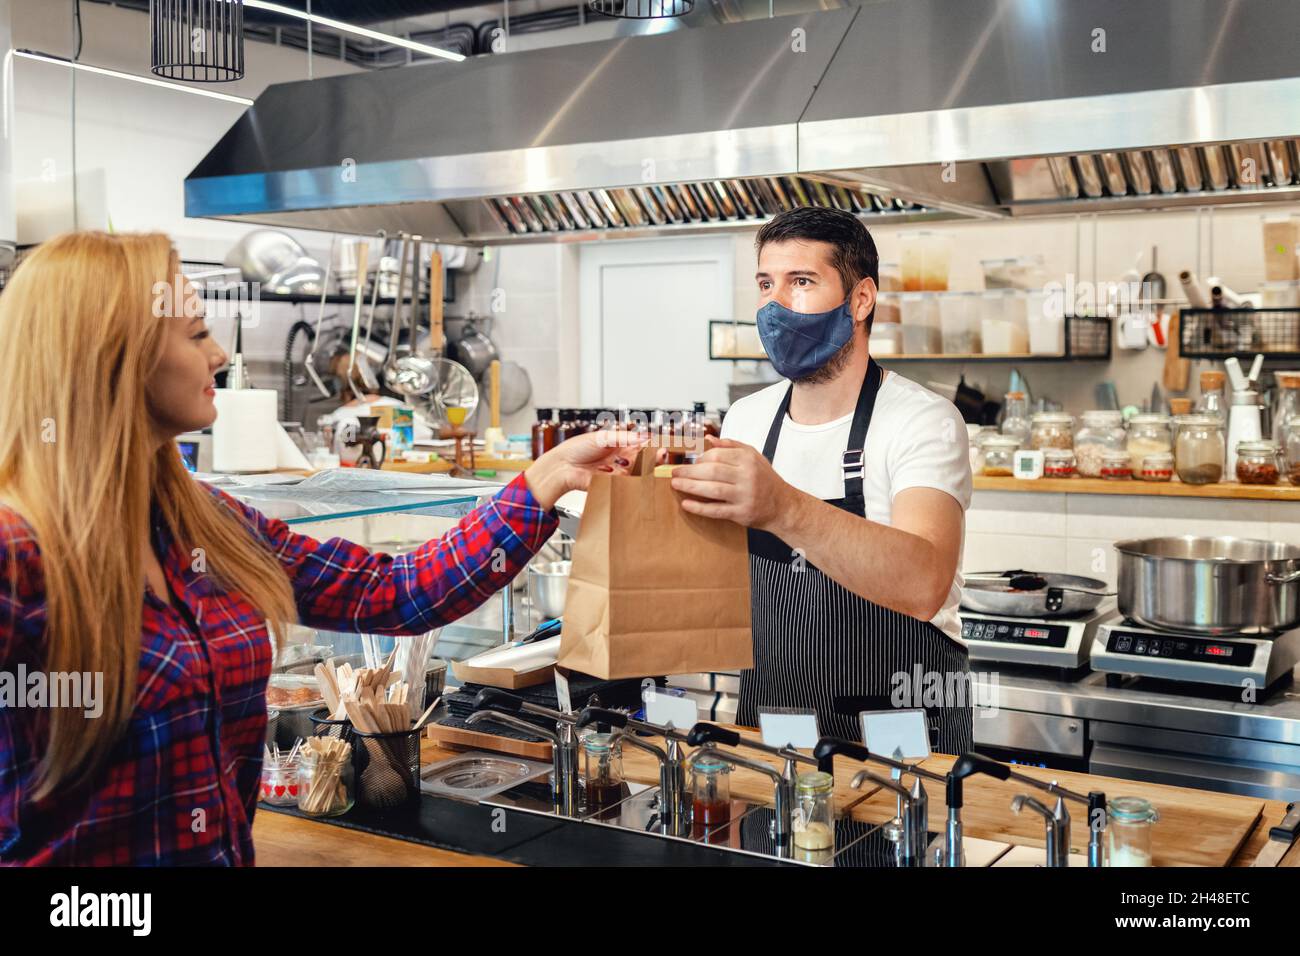 Proprietario con maschera facciale che serve cibo da asporto al cliente al banco in un piccolo ristorante per famiglie. Foto Stock